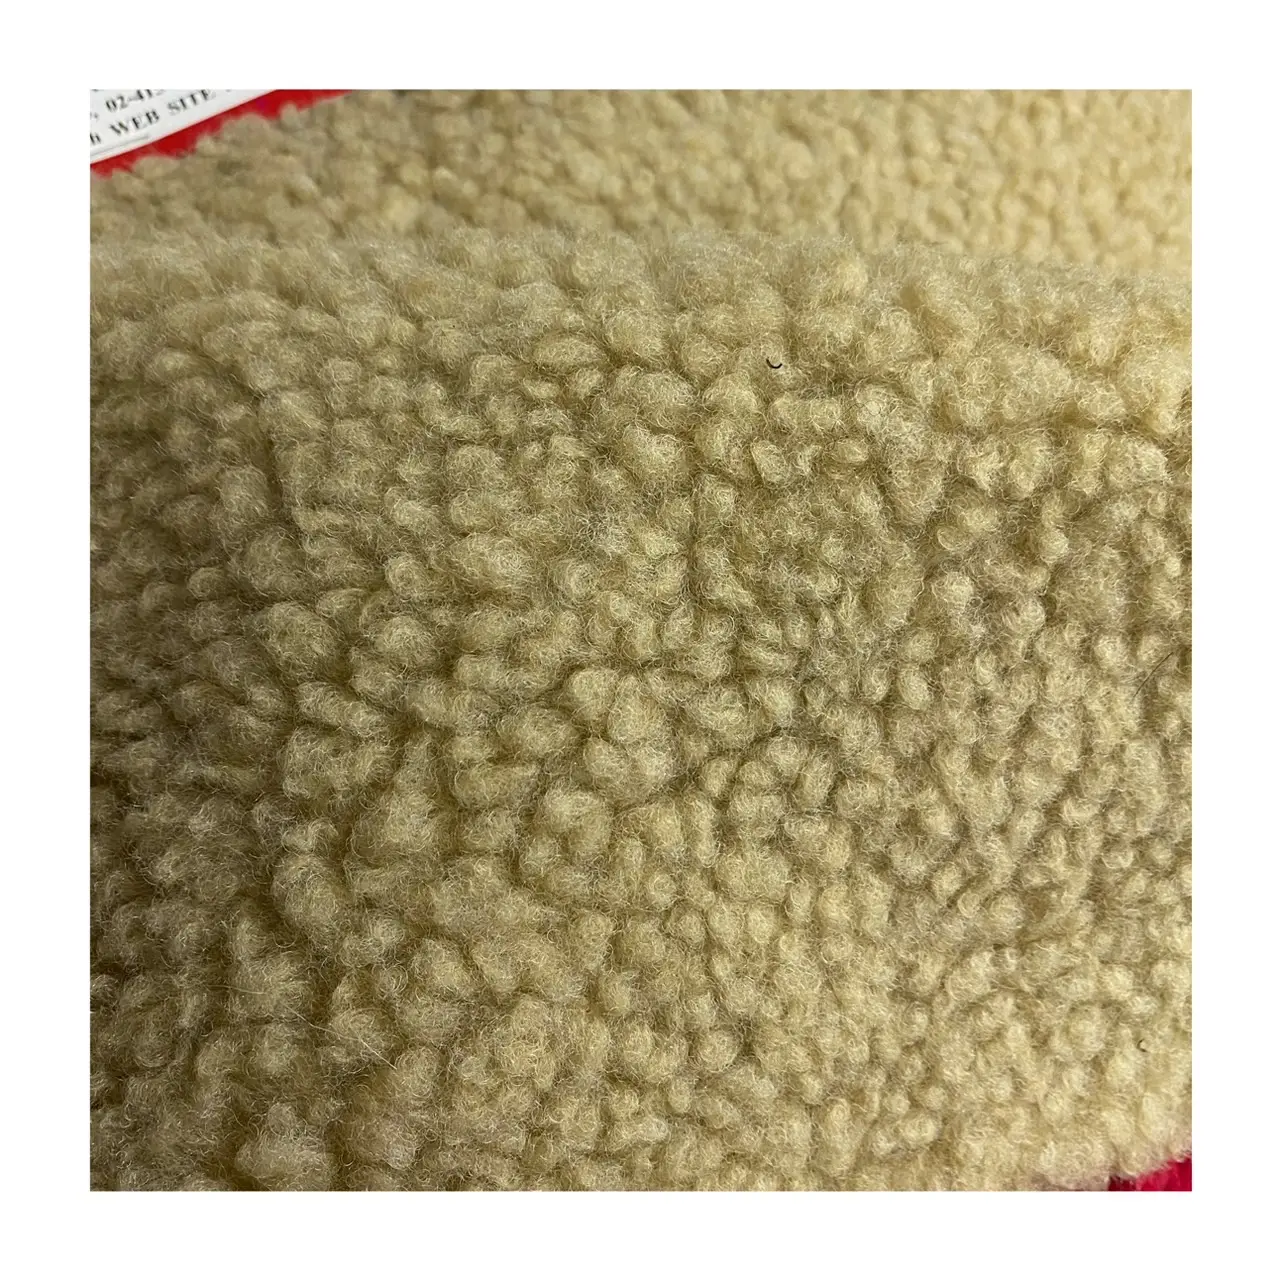 Высококачественная акриловая/Полиэстеровая мягкая шерпа 10 мм ткань из искусственного меха бежевого цвета для игрушек ковер куртка тапочки одежда